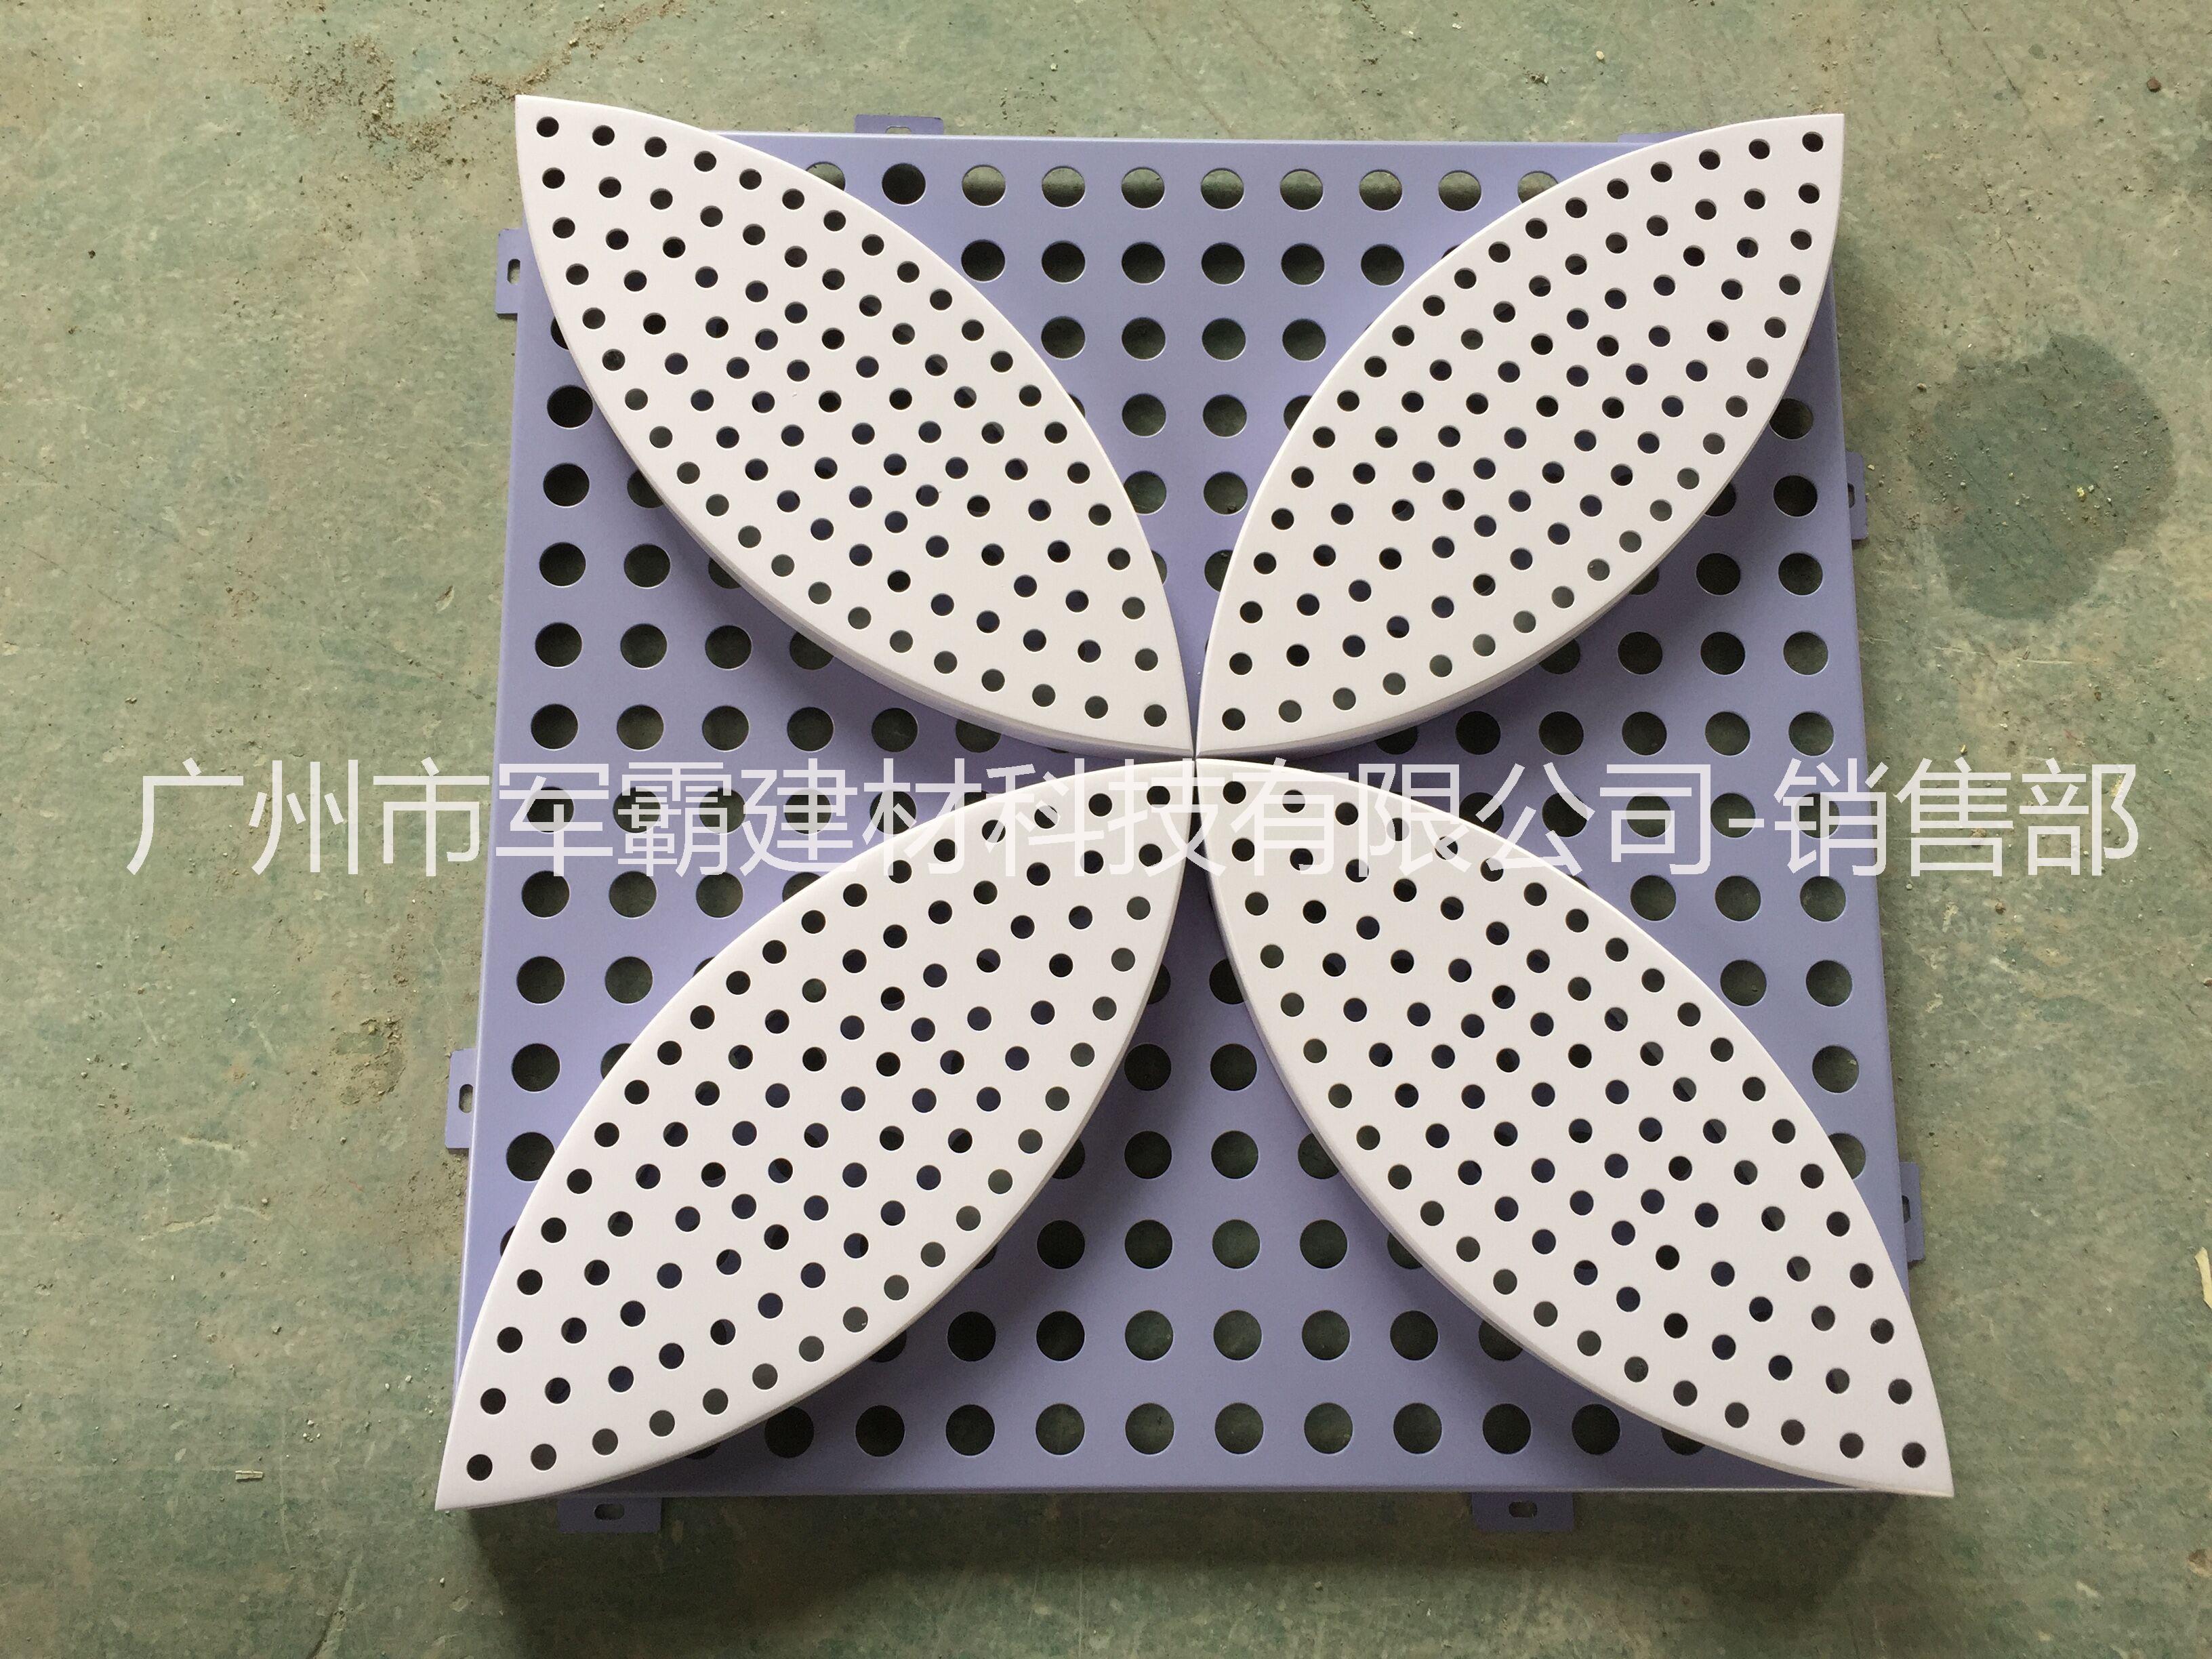 广州市铝单板厂家按需定做厂家供应铝单板厂家  供应铝单板厂家按需定做